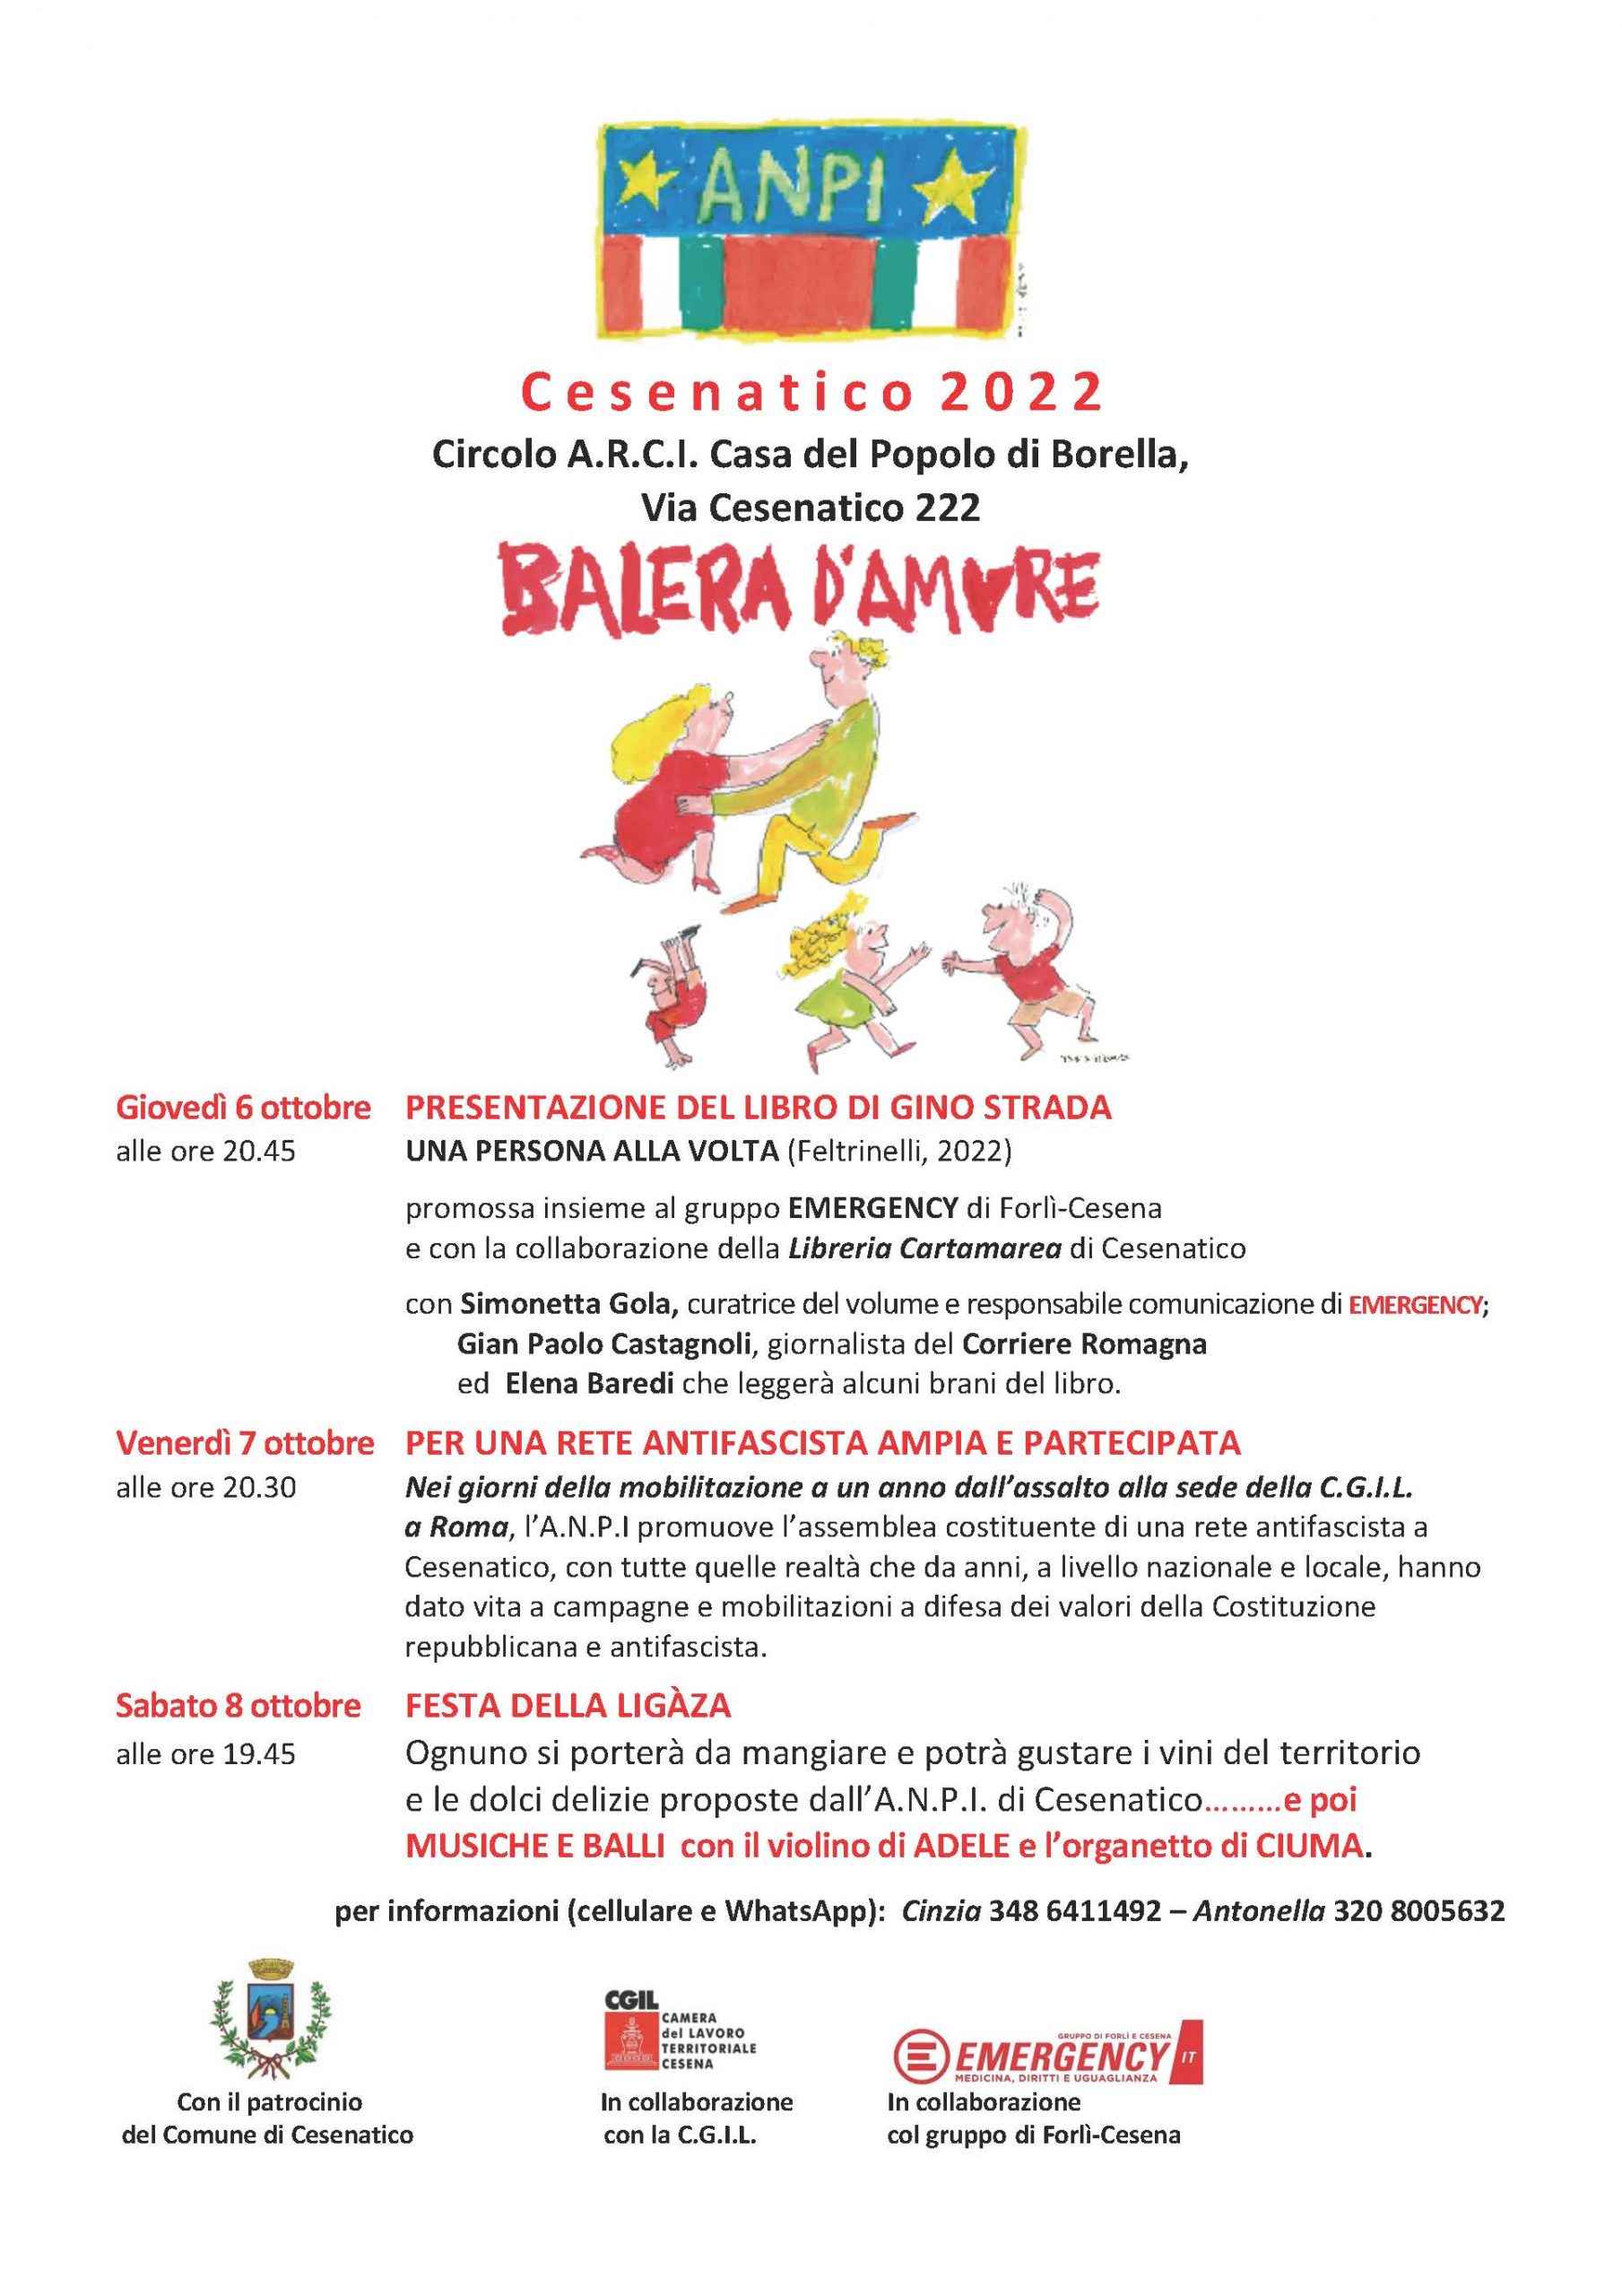 Dal 6 all'8 Ottobre torna Balera d'Amore, tre giorni di iniziative a Cesenatico, per parlare di Costituzione e Antifascismo.